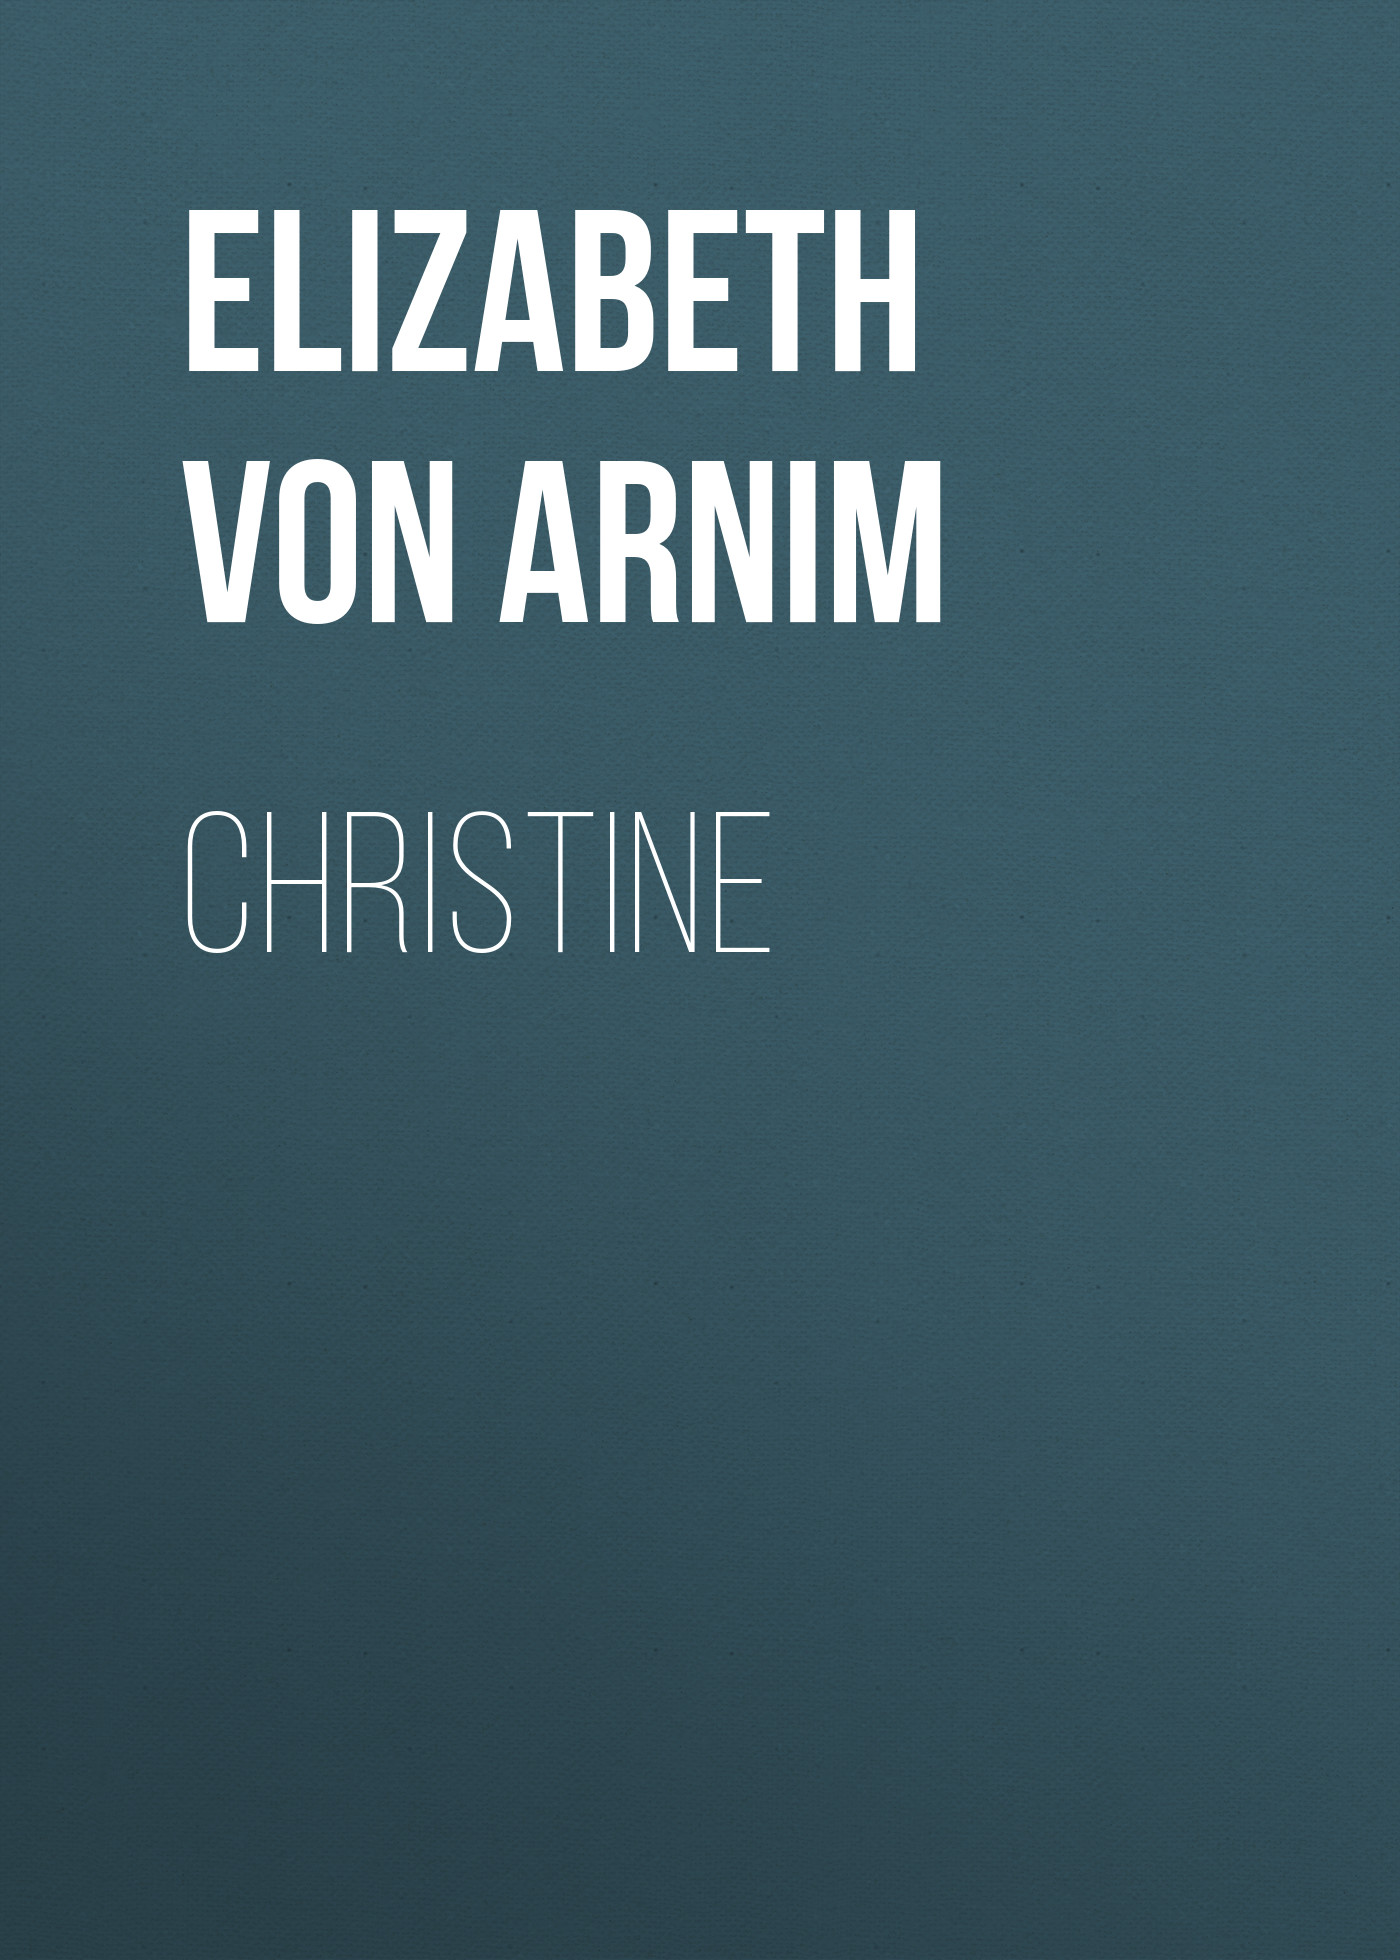 Книга Christine из серии , созданная Elizabeth von Arnim, может относится к жанру Книги о войне, Зарубежная старинная литература, Зарубежная классика. Стоимость электронной книги Christine с идентификатором 36323860 составляет 0 руб.